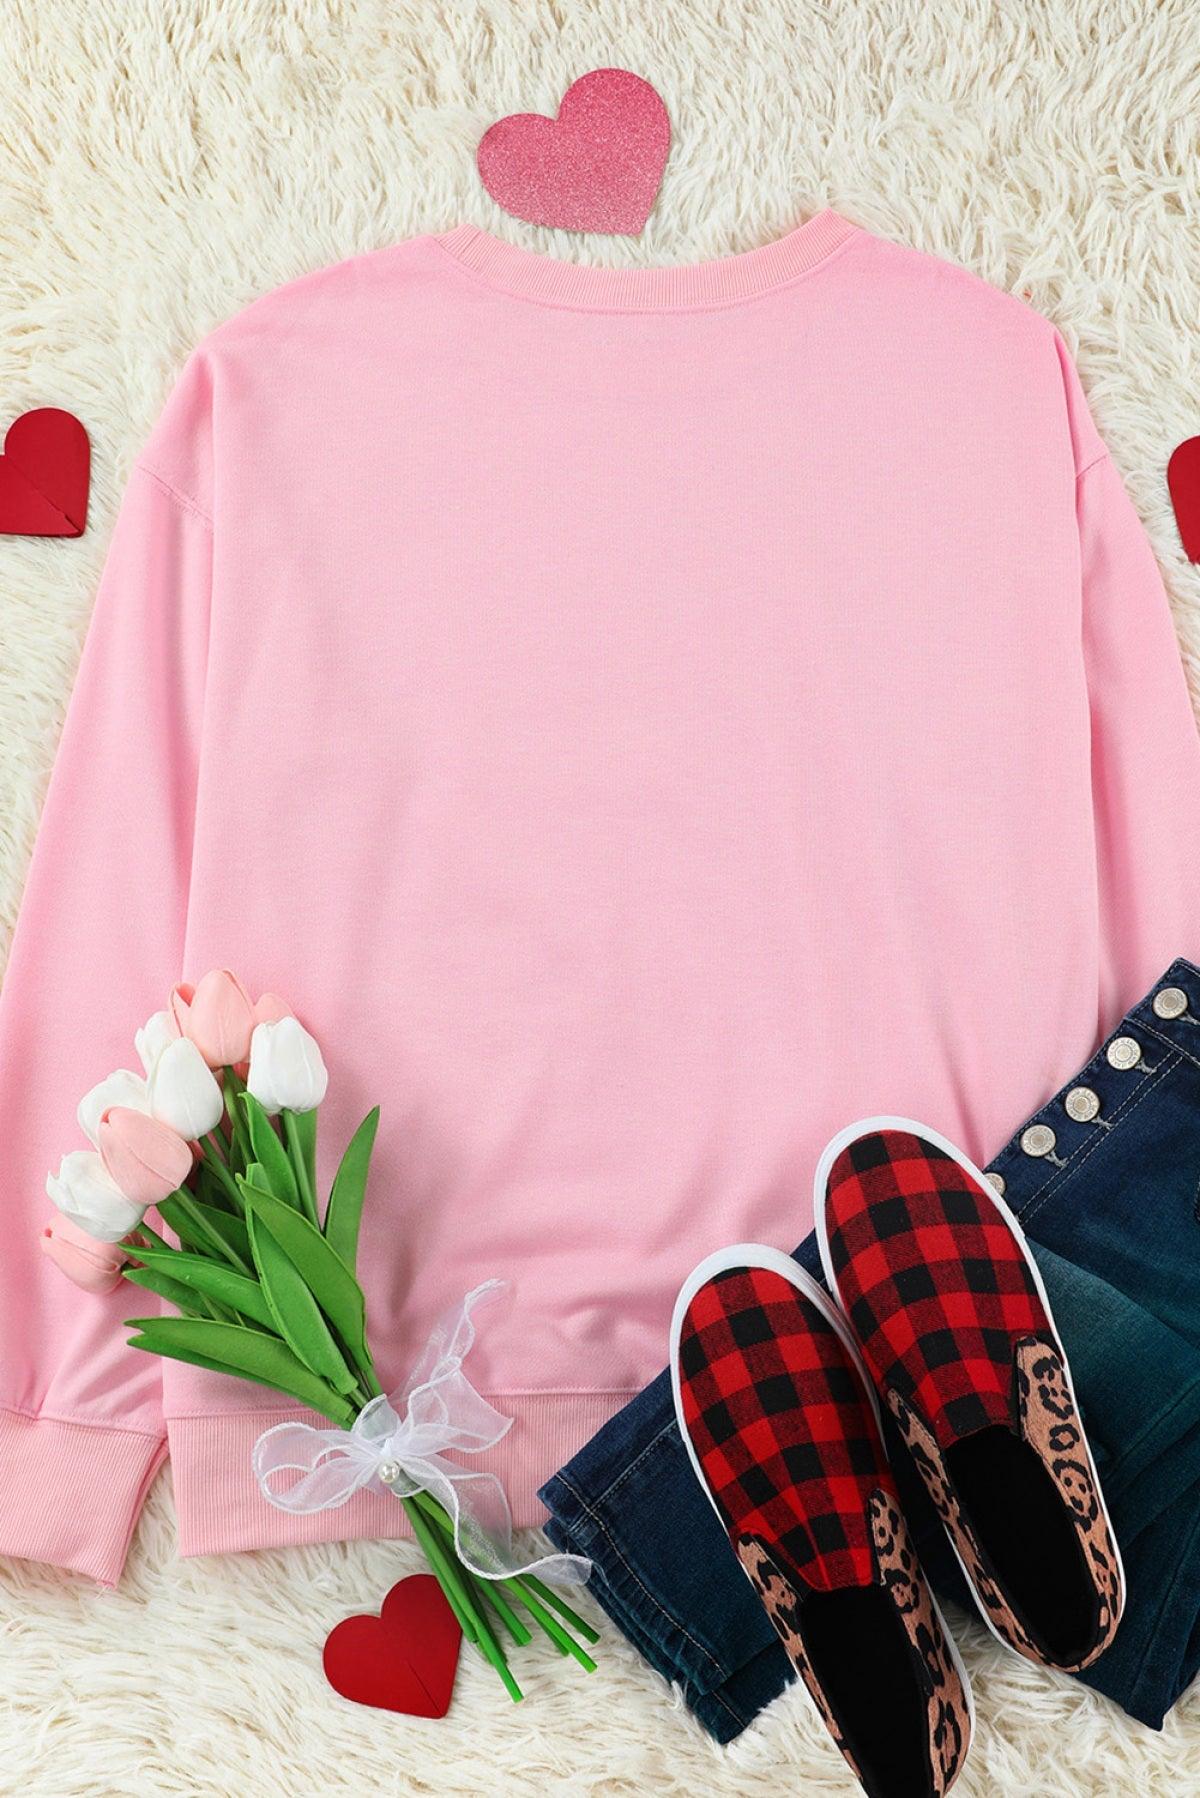 Pink Valentine Sweatshirt Sweet Drinking Graphic Print